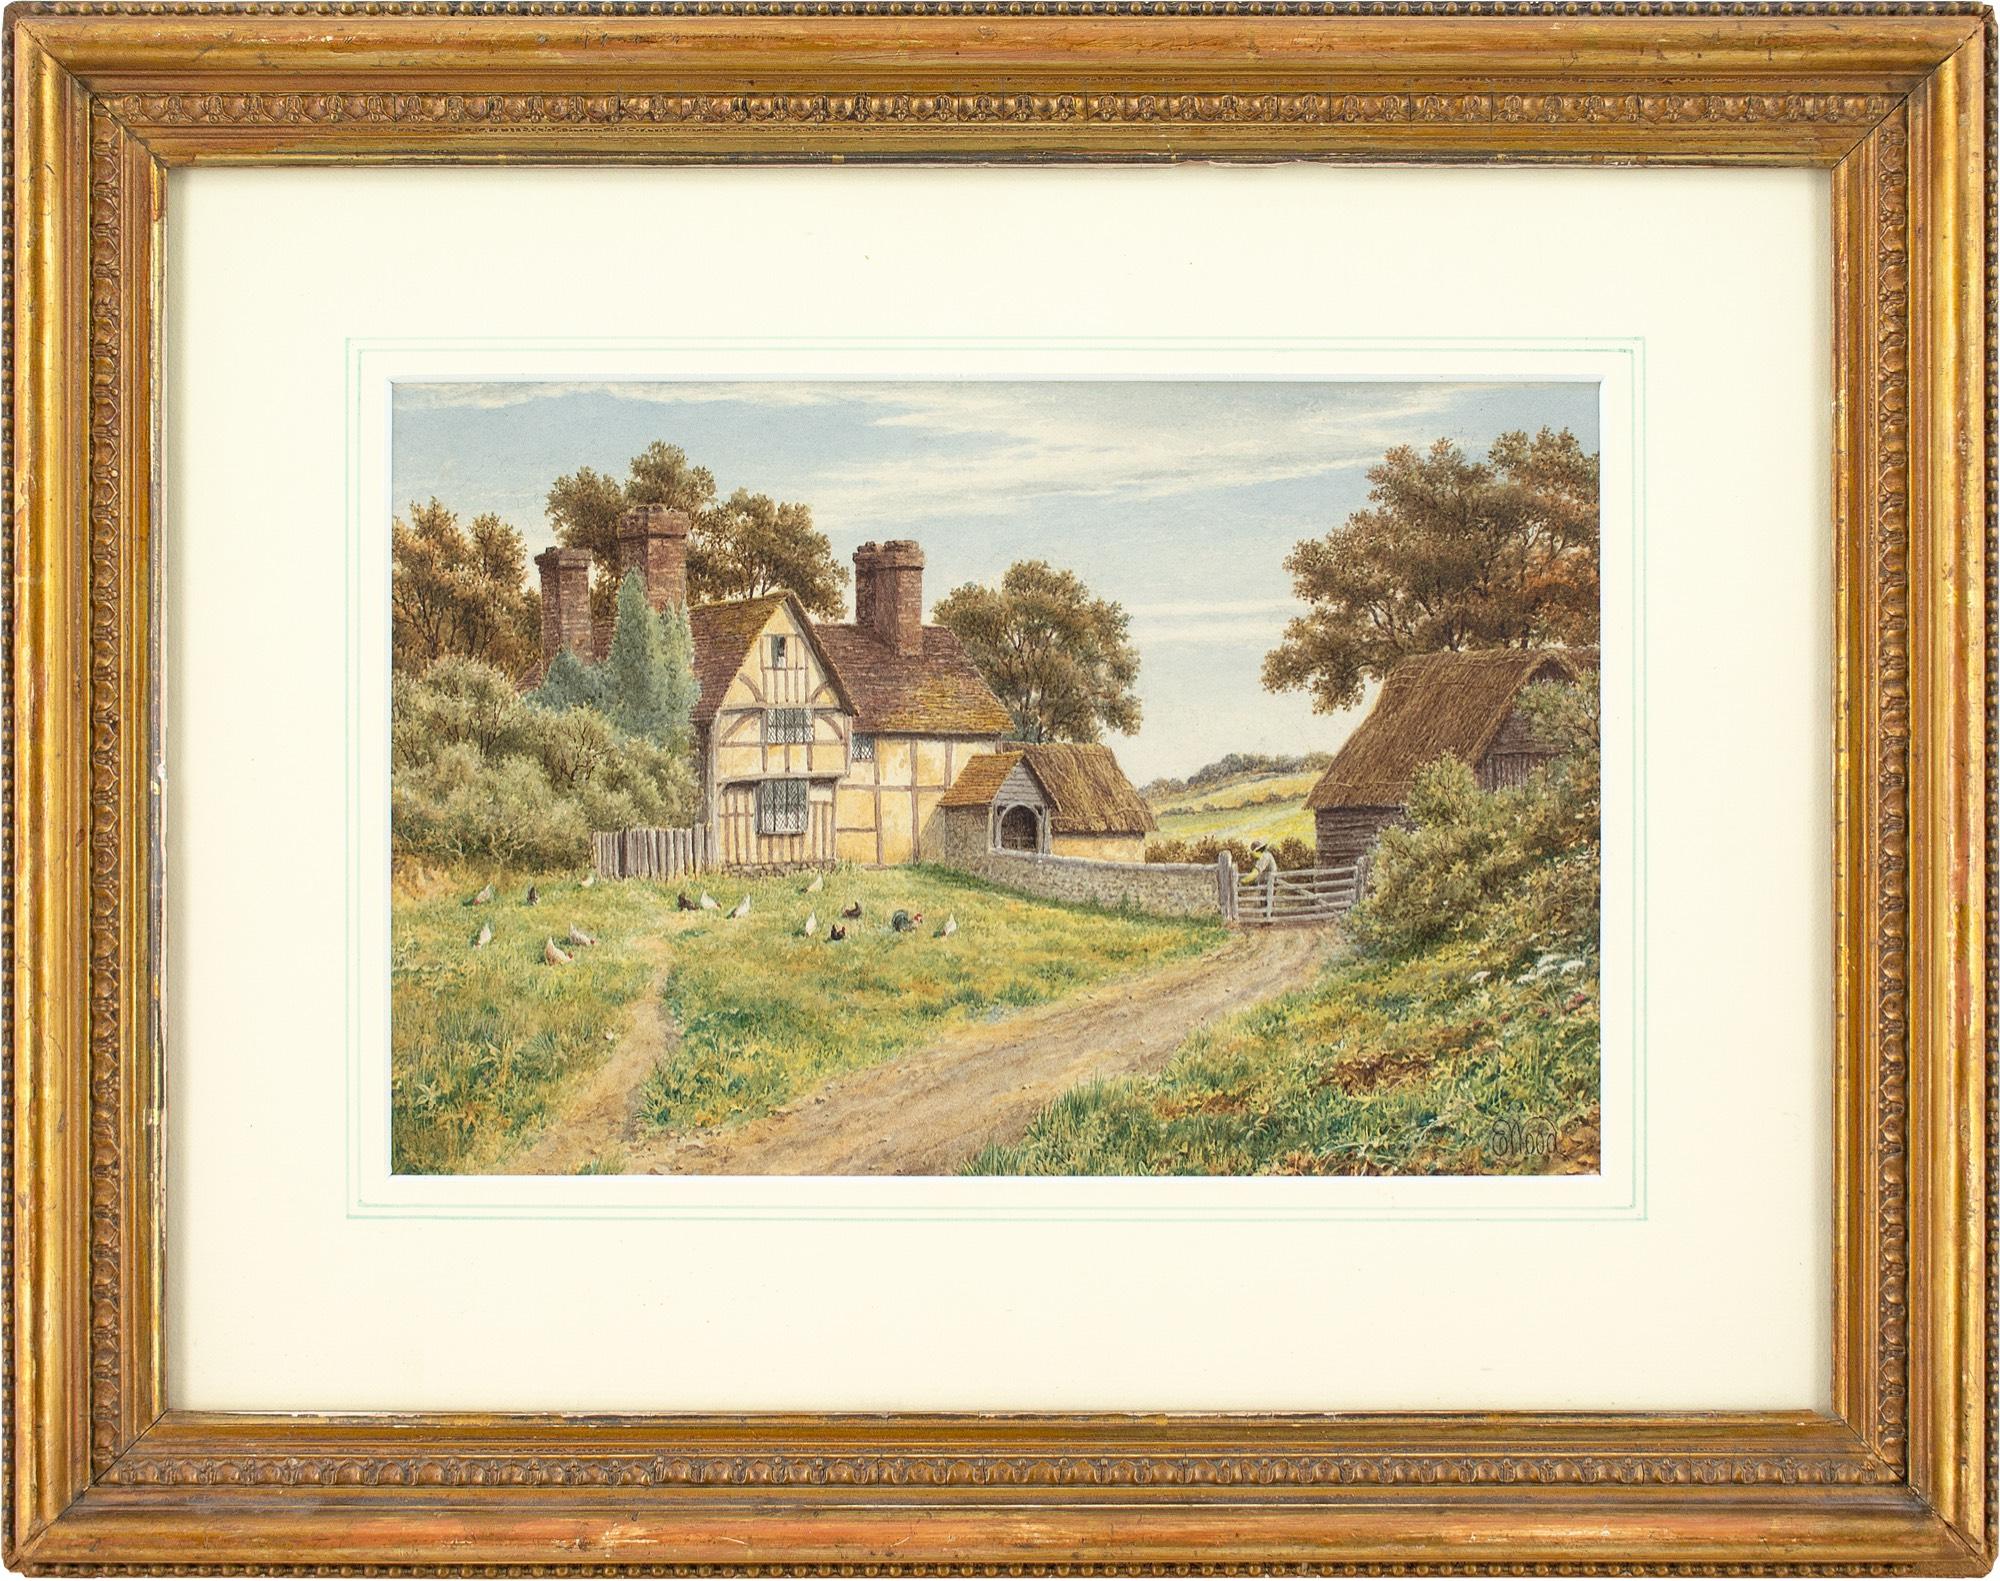 Cette charmante aquarelle de la fin du XIXe siècle, réalisée par l'artiste britannique E Wood, représente une belle ferme des XVe et XVIe siècles située près de Godalming, dans le Surrey, en Angleterre.

Tandis que les poules cherchent de la